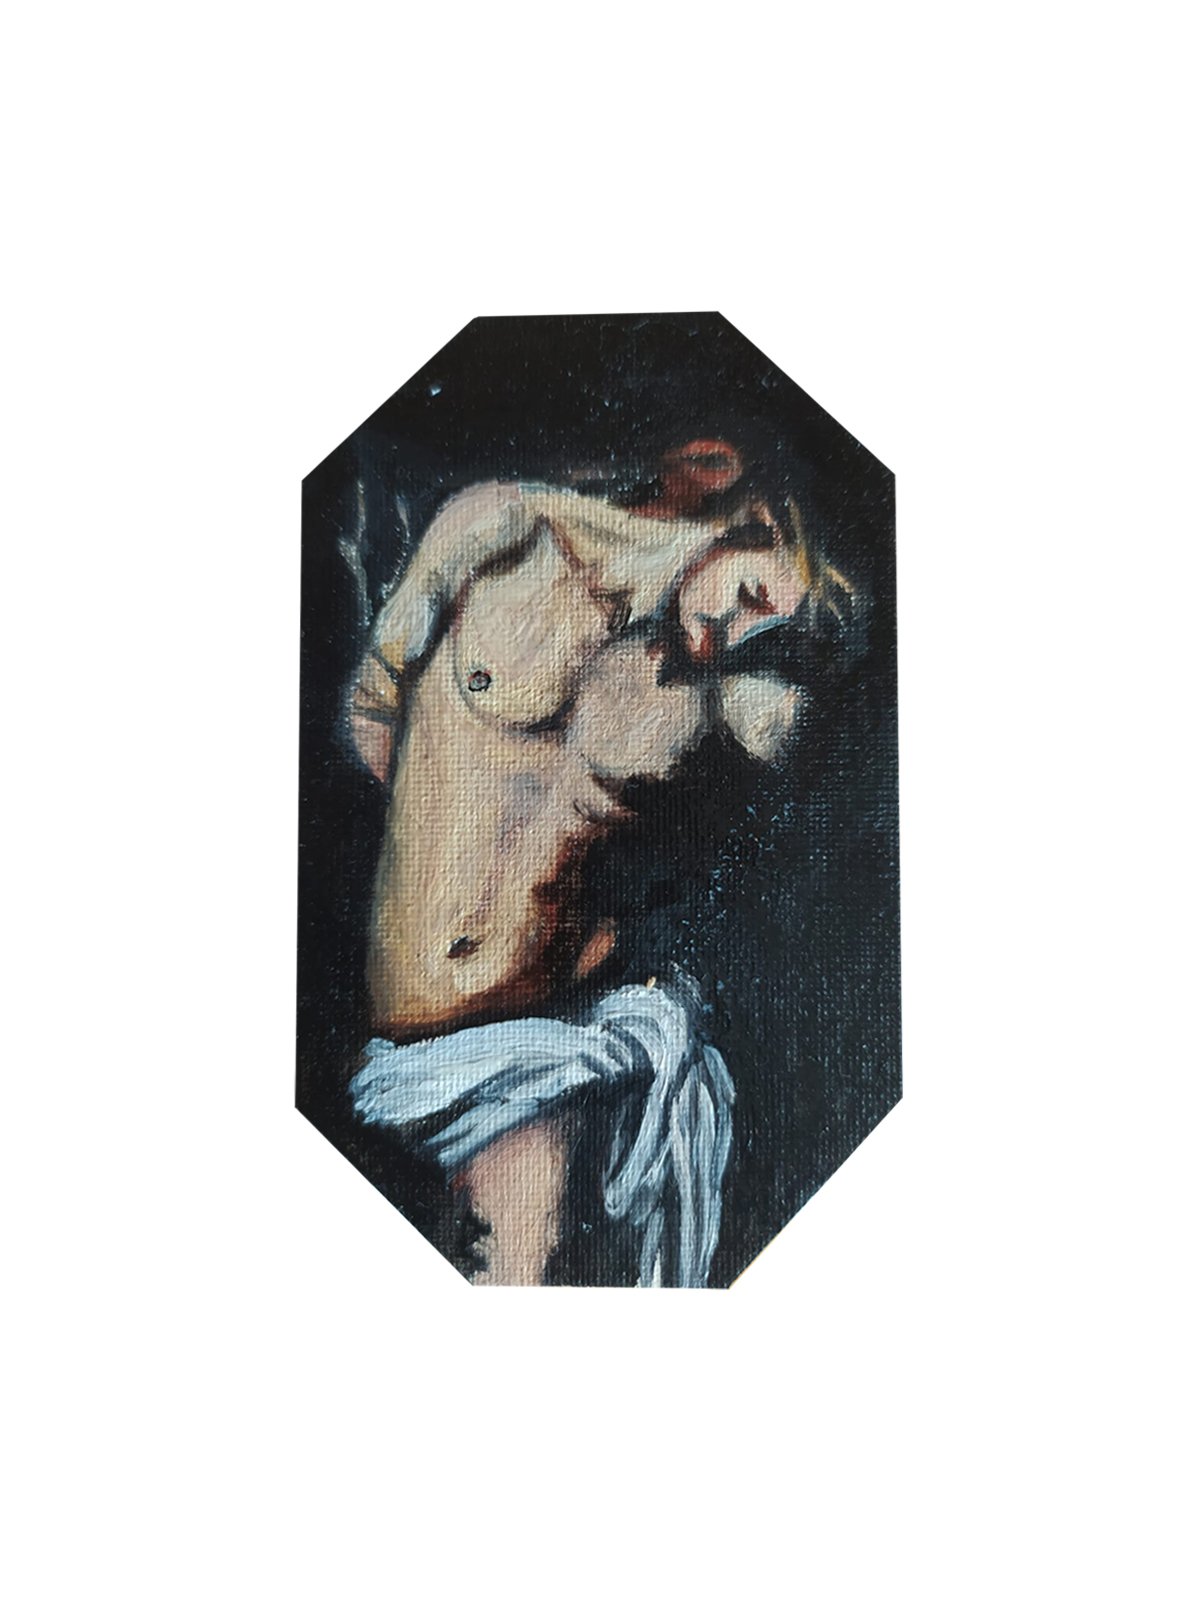 La flagellazione di Caravaggio